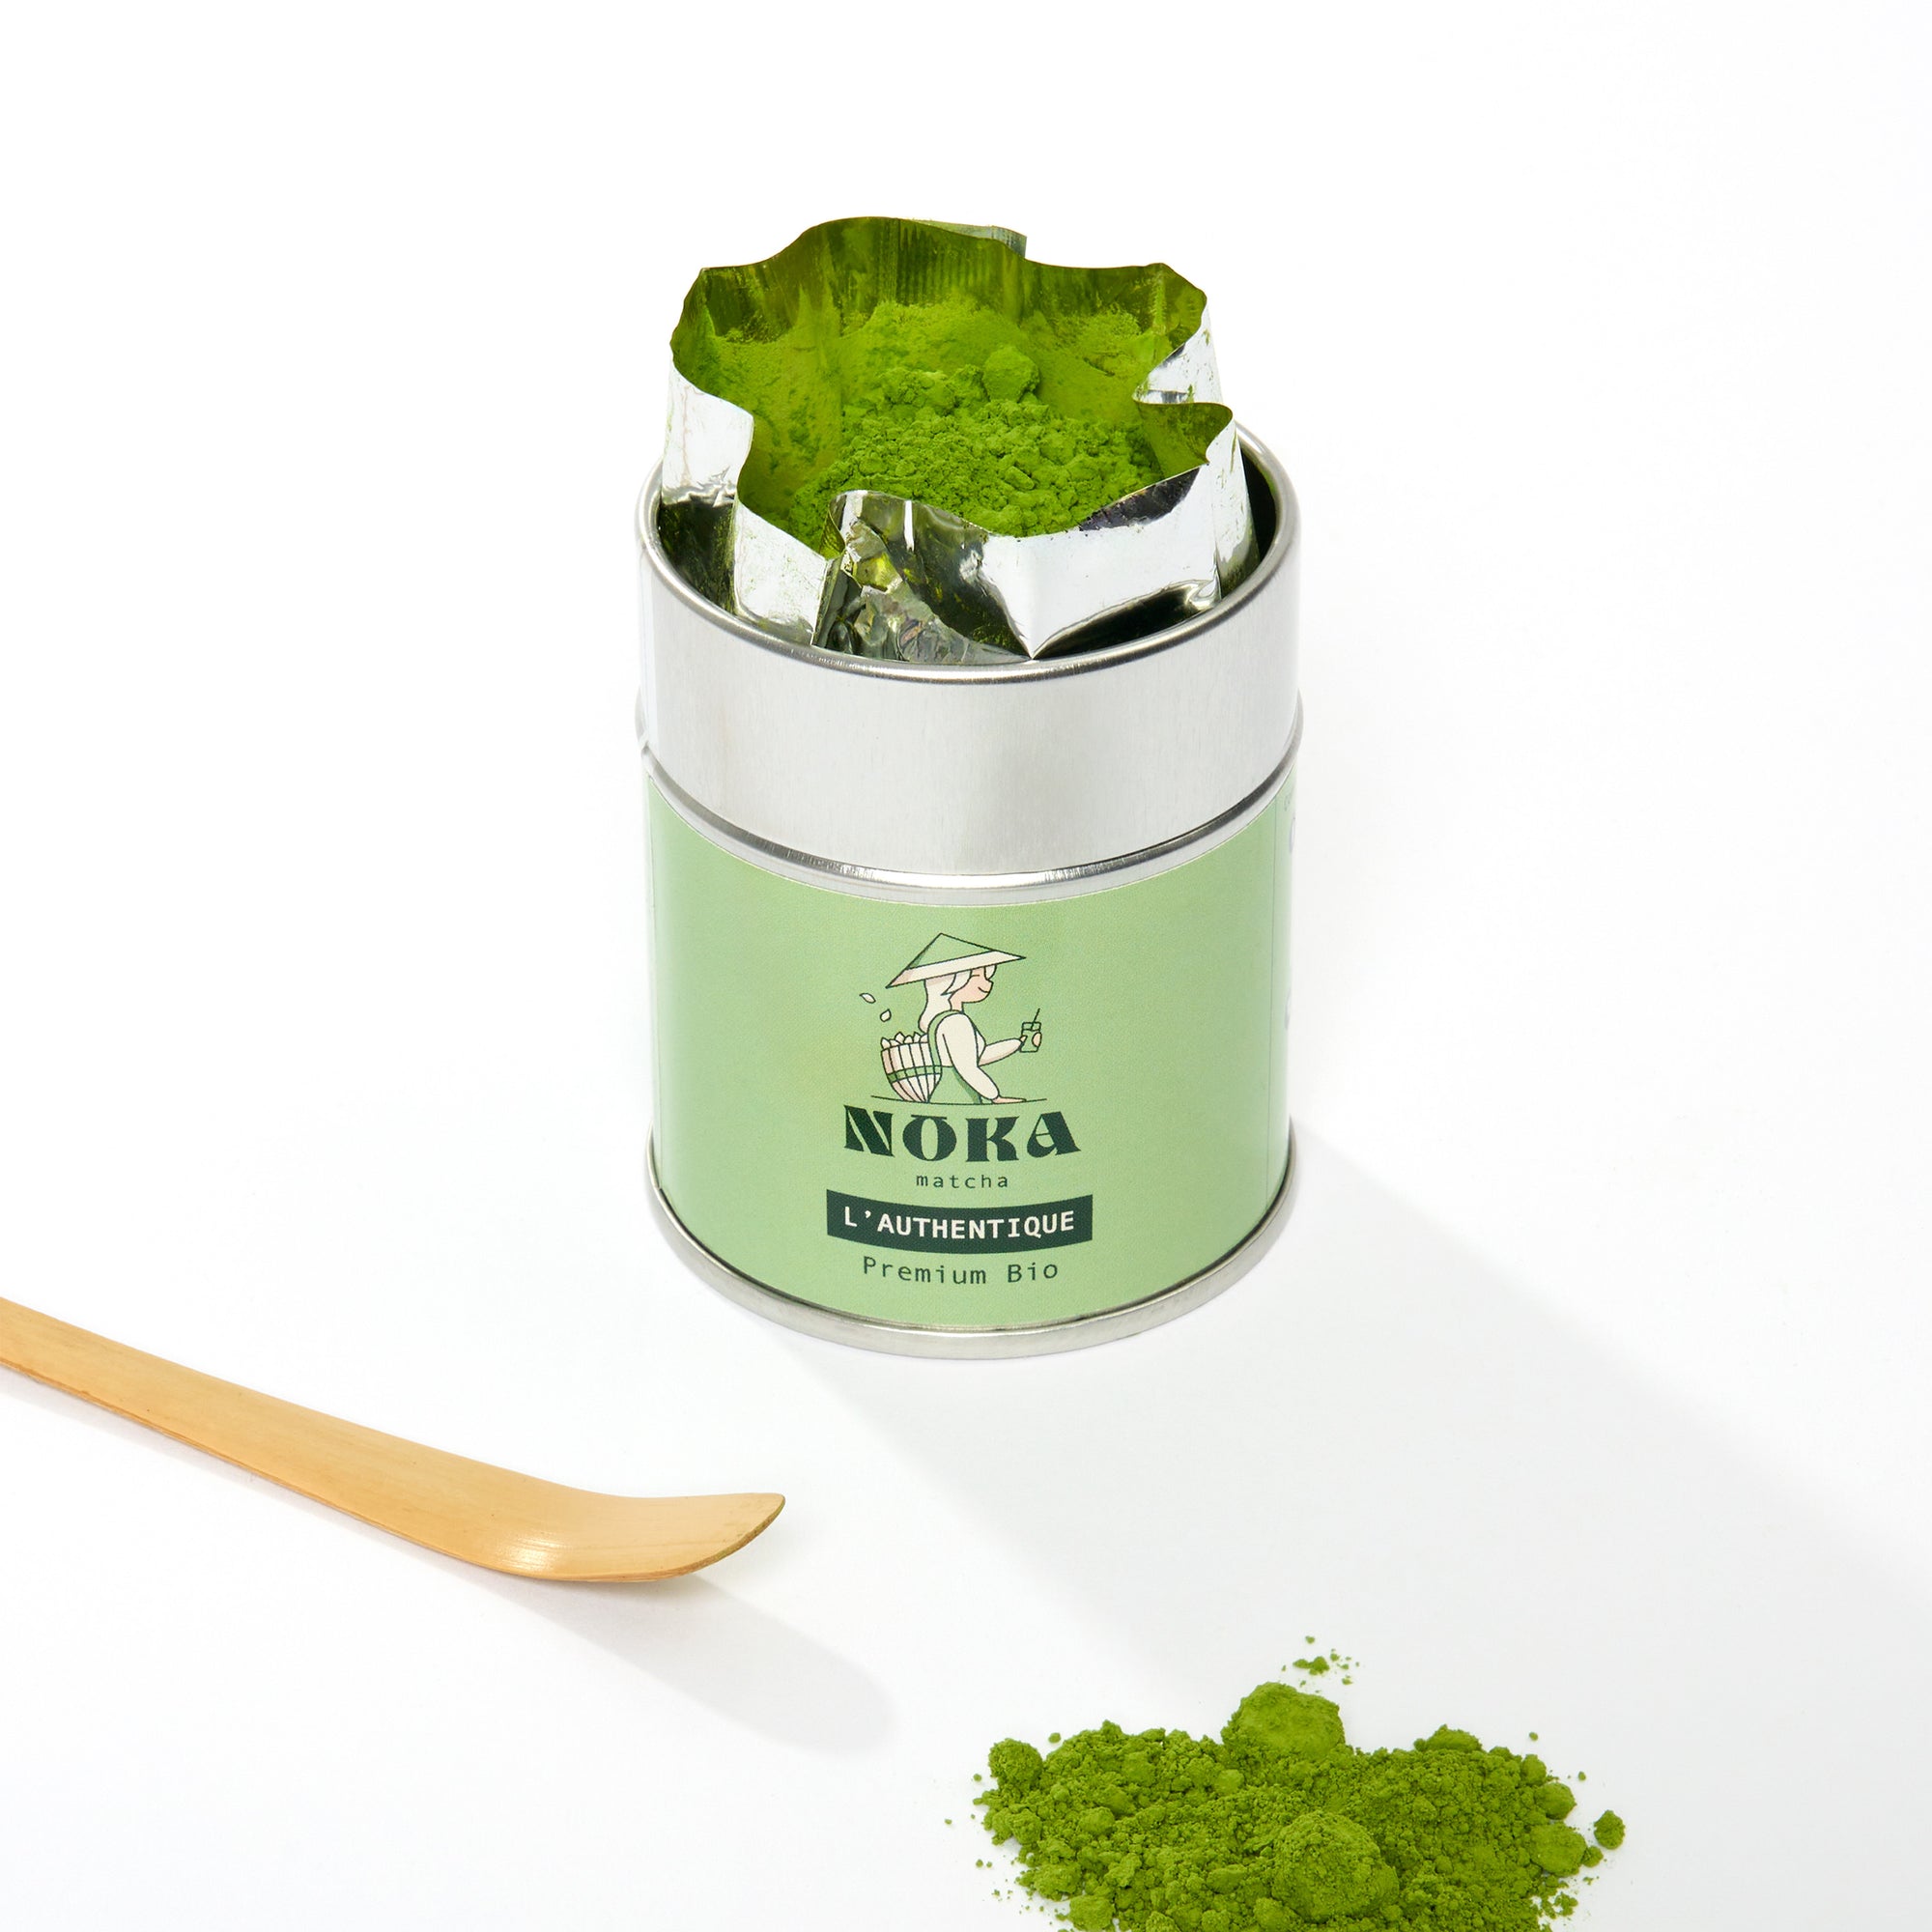 Visuel élégant du matcha noka l'authentique et sa poudre de thé à la magnifique couleur verte